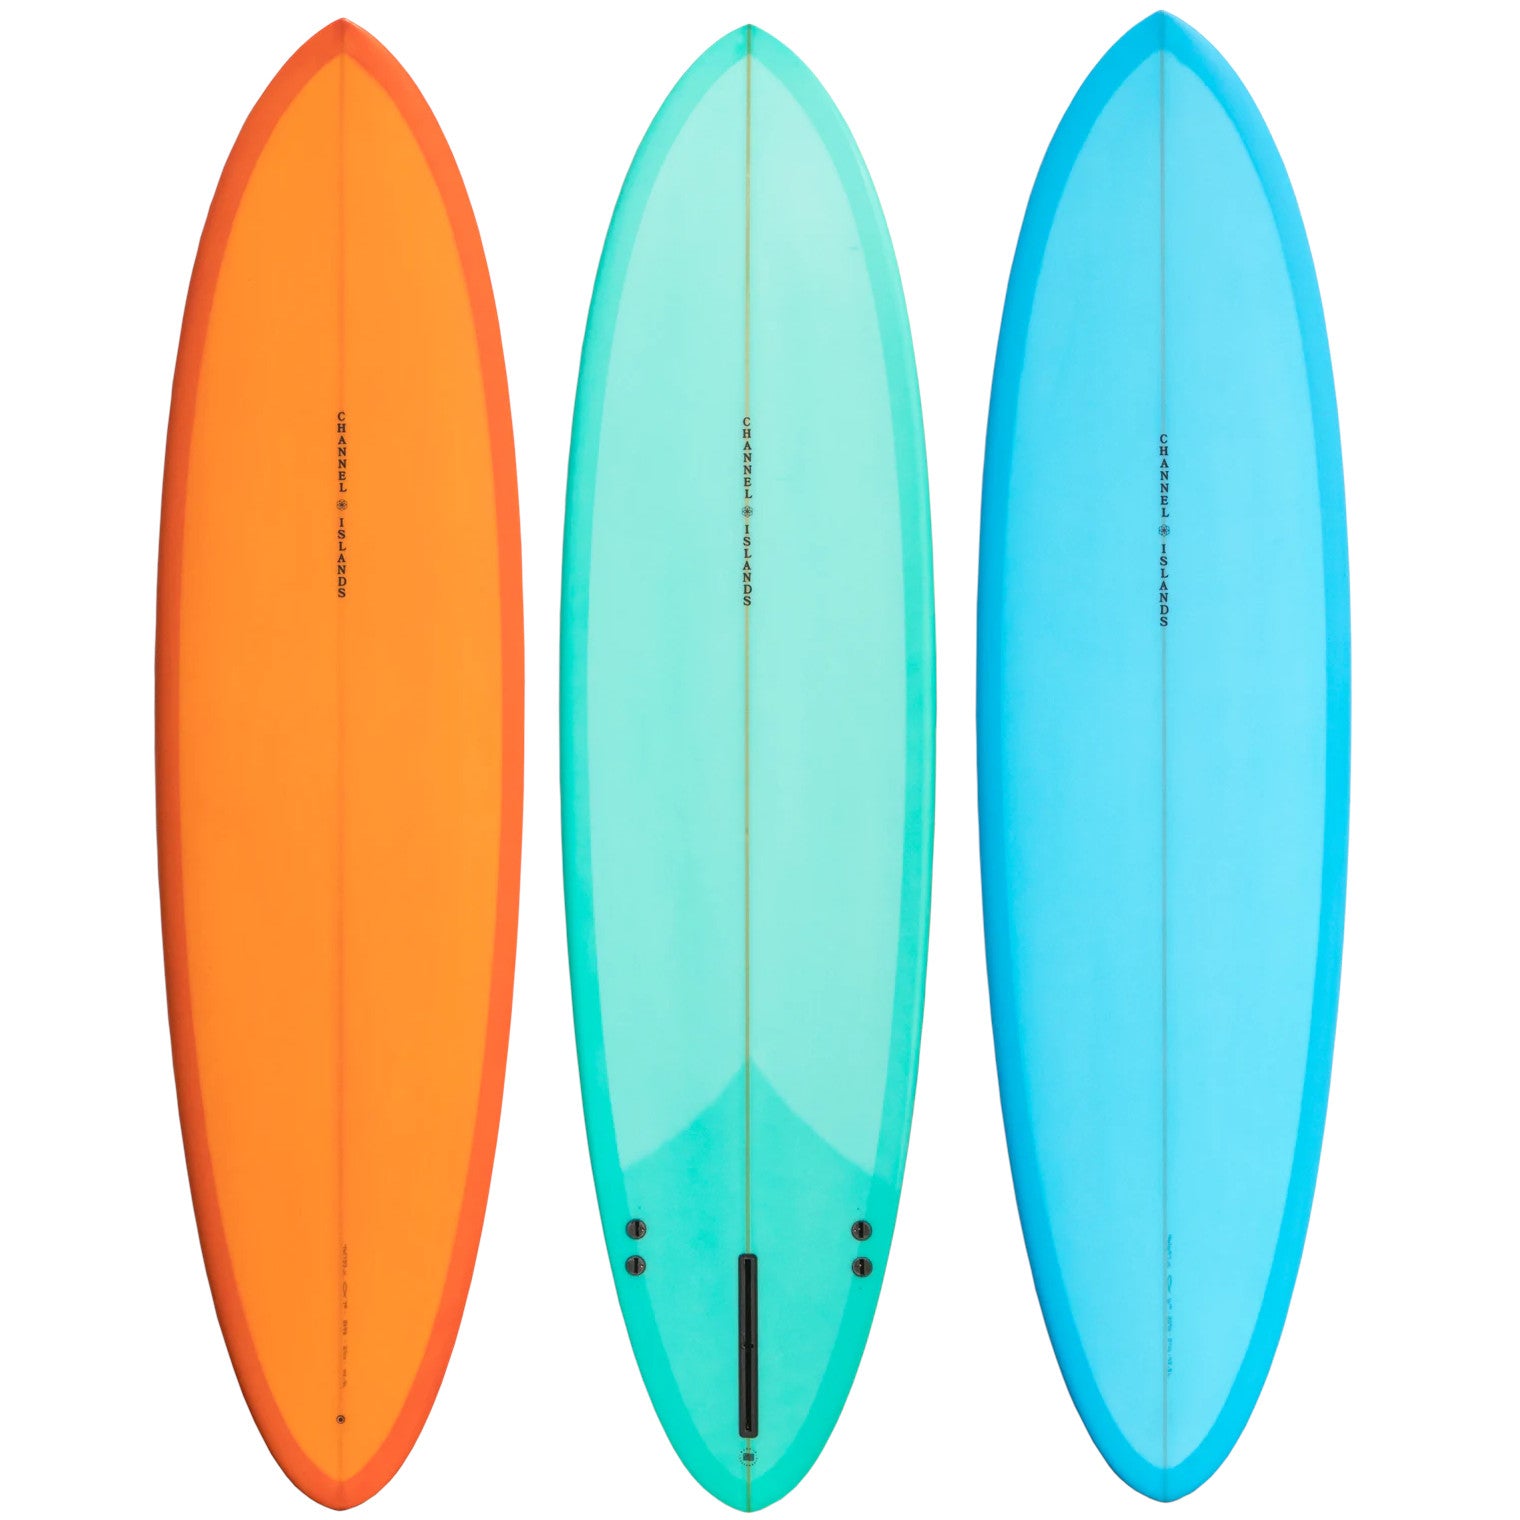 Channel Islands surfboard